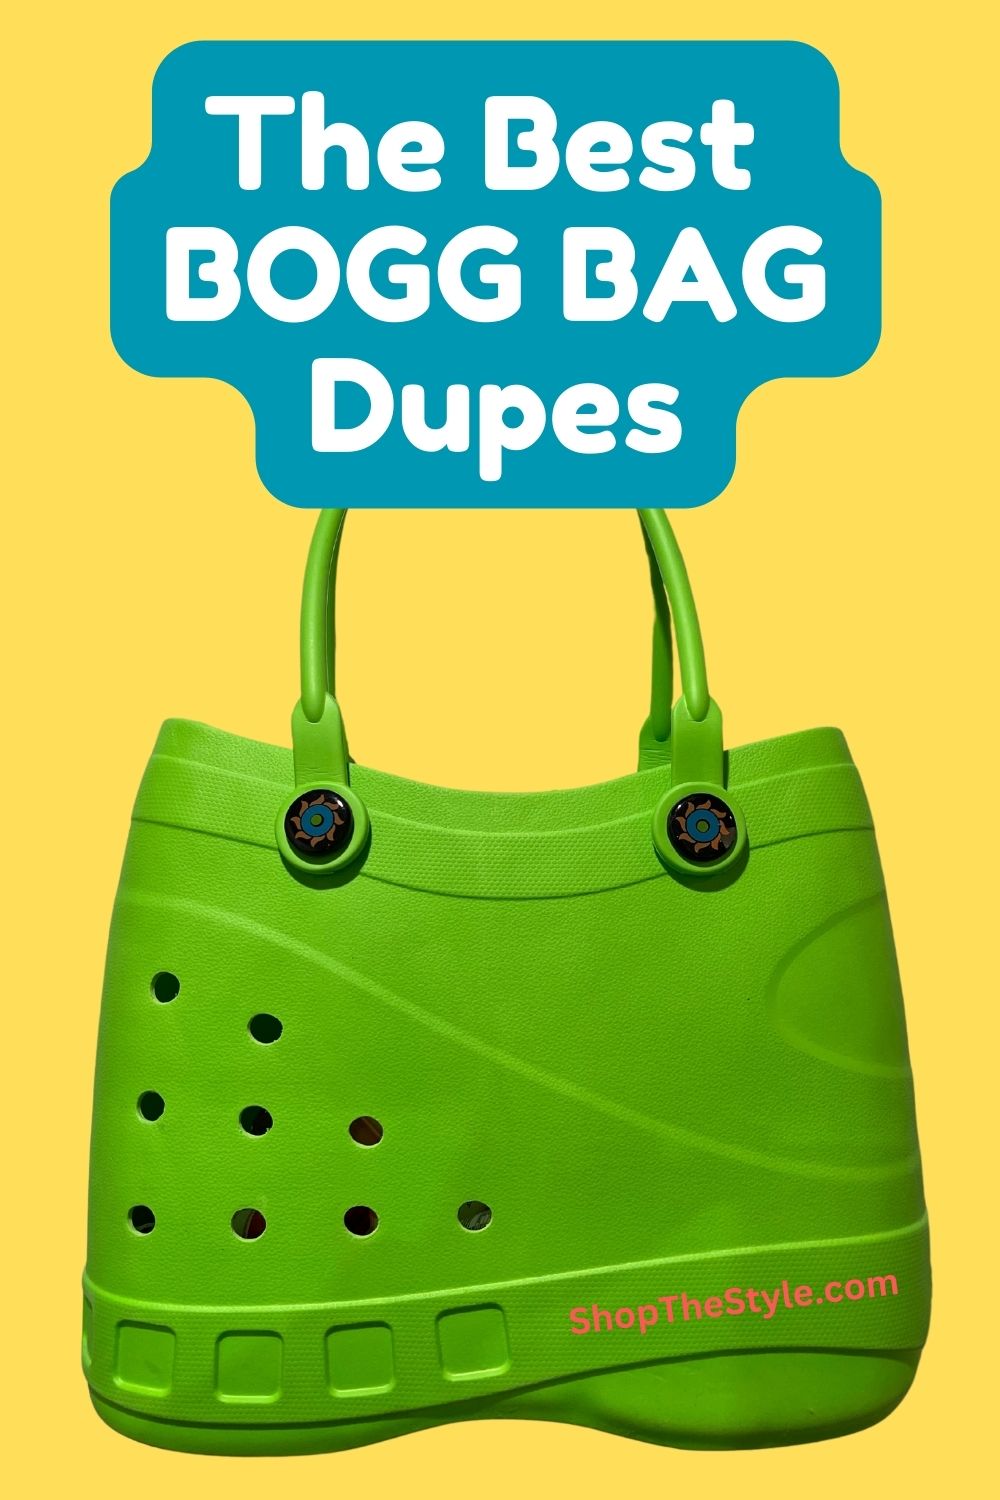 The Best BOGG BAG Dupes